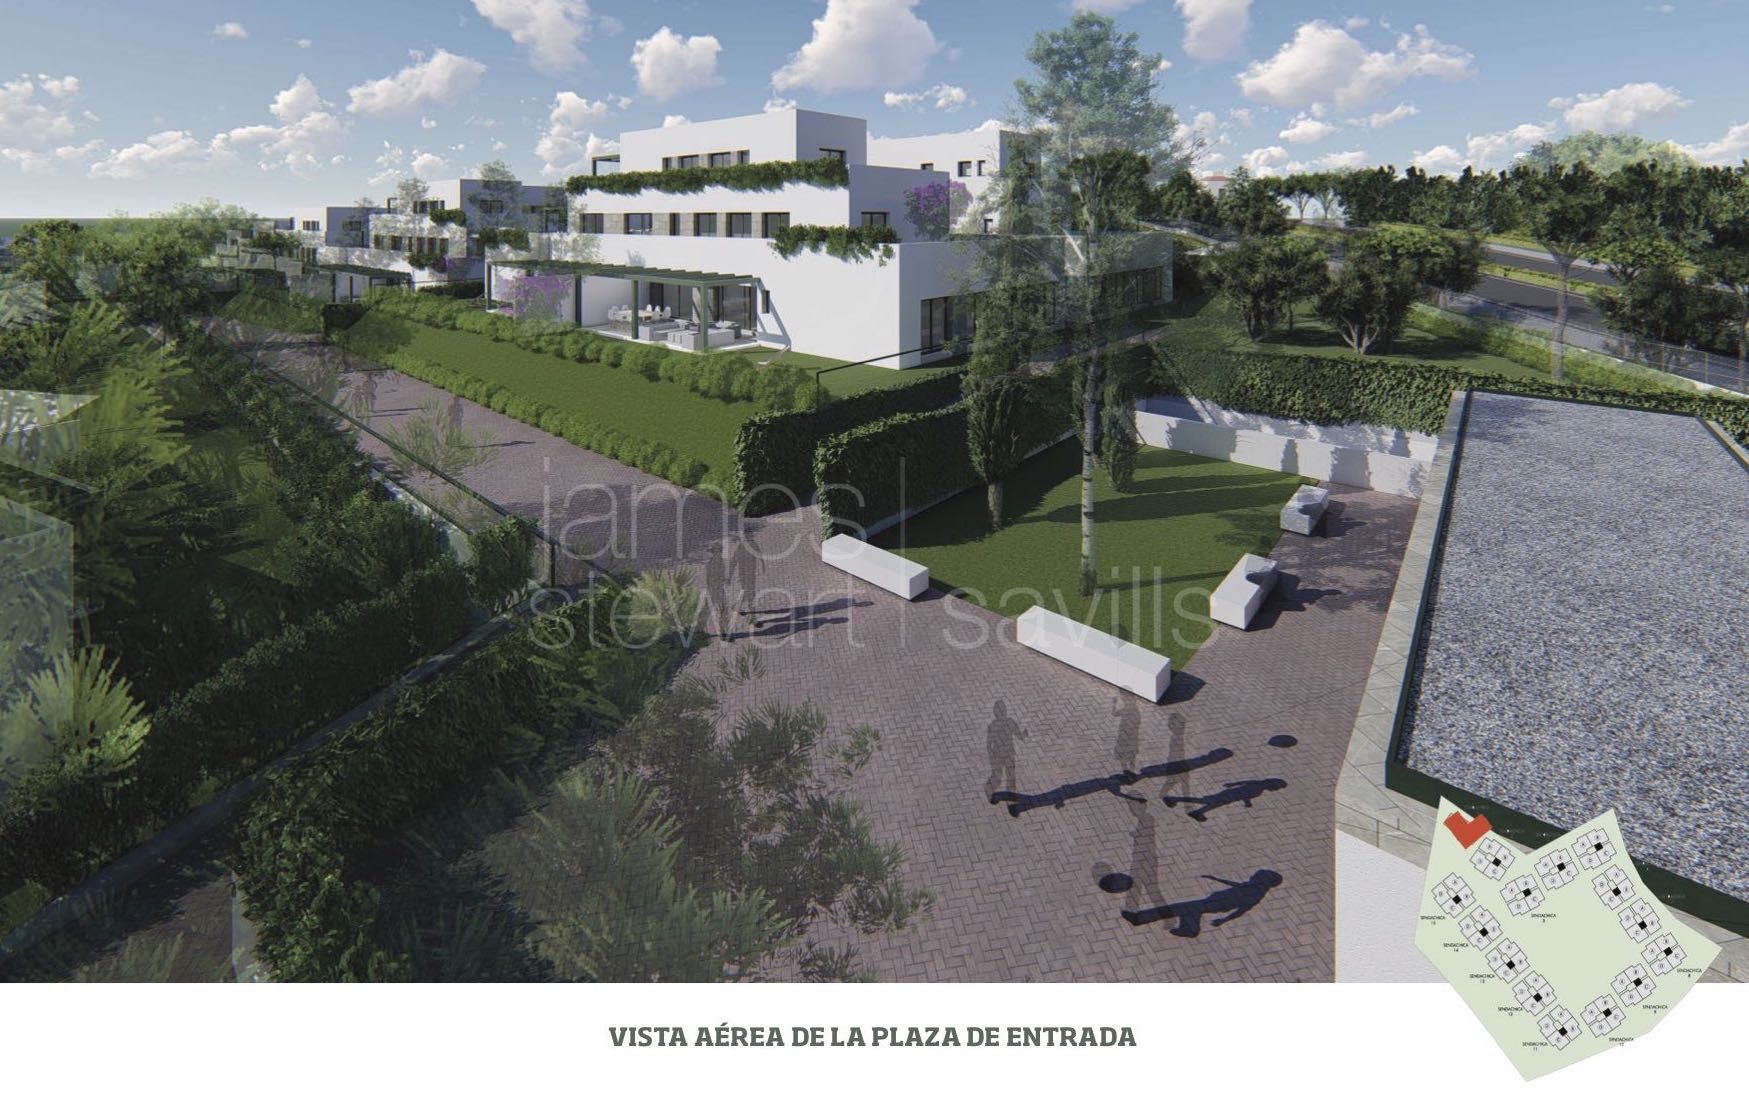 Nuevo apartamento de estilo contemporáneo en Sotogrande € 510.000 mas IVA